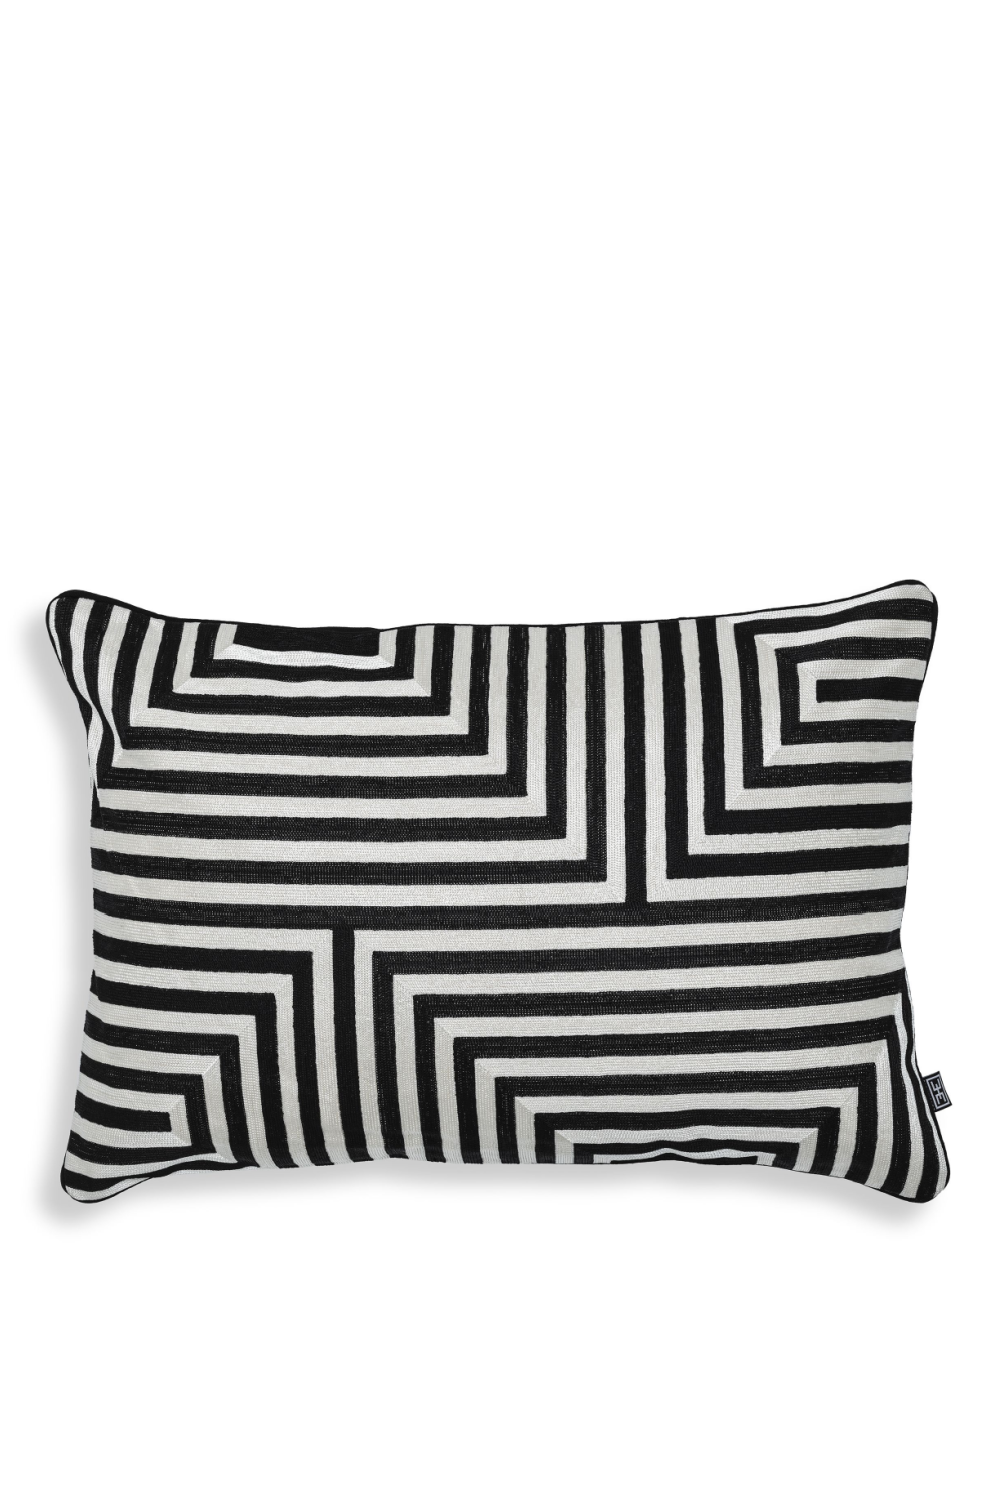 Black & White Rectangular Pillow | Eichholtz Spray | Oroa.com